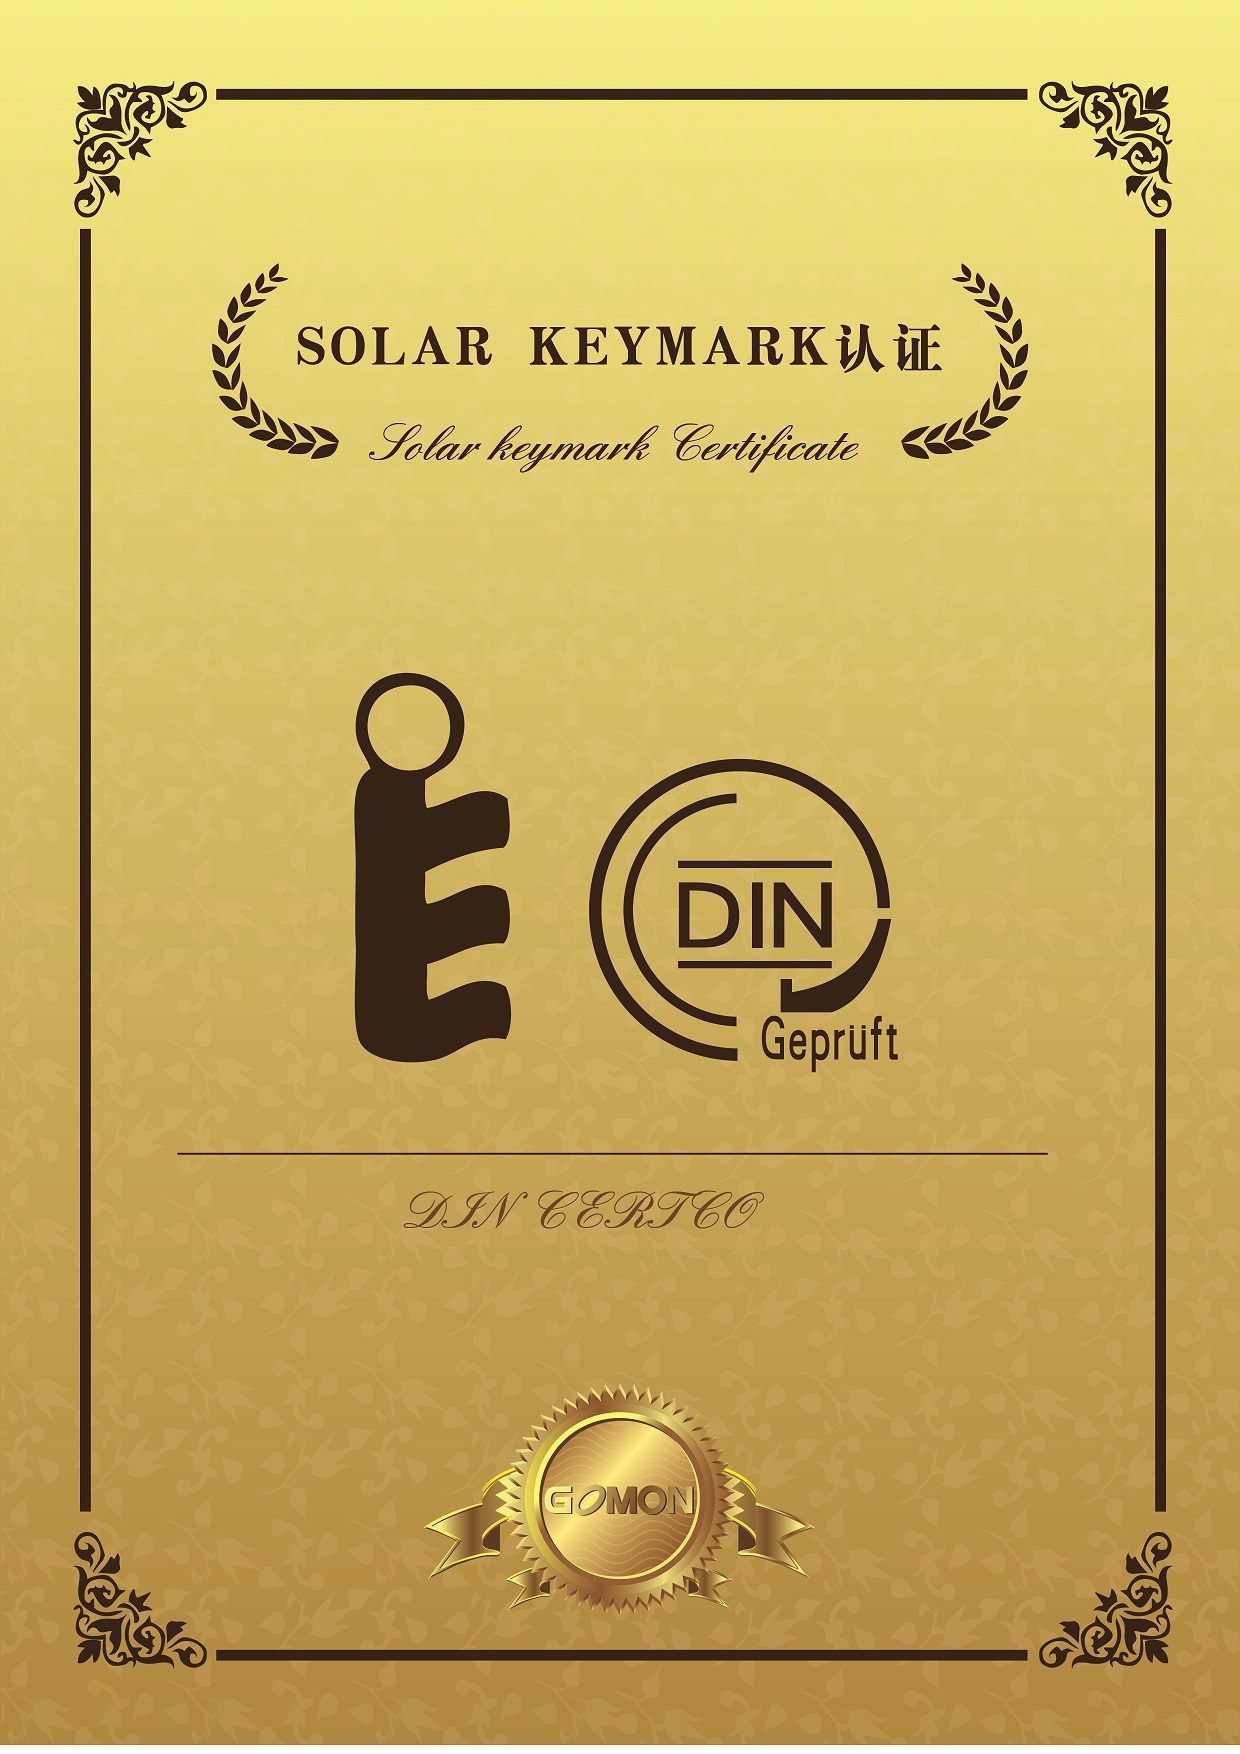 solar keymark认证